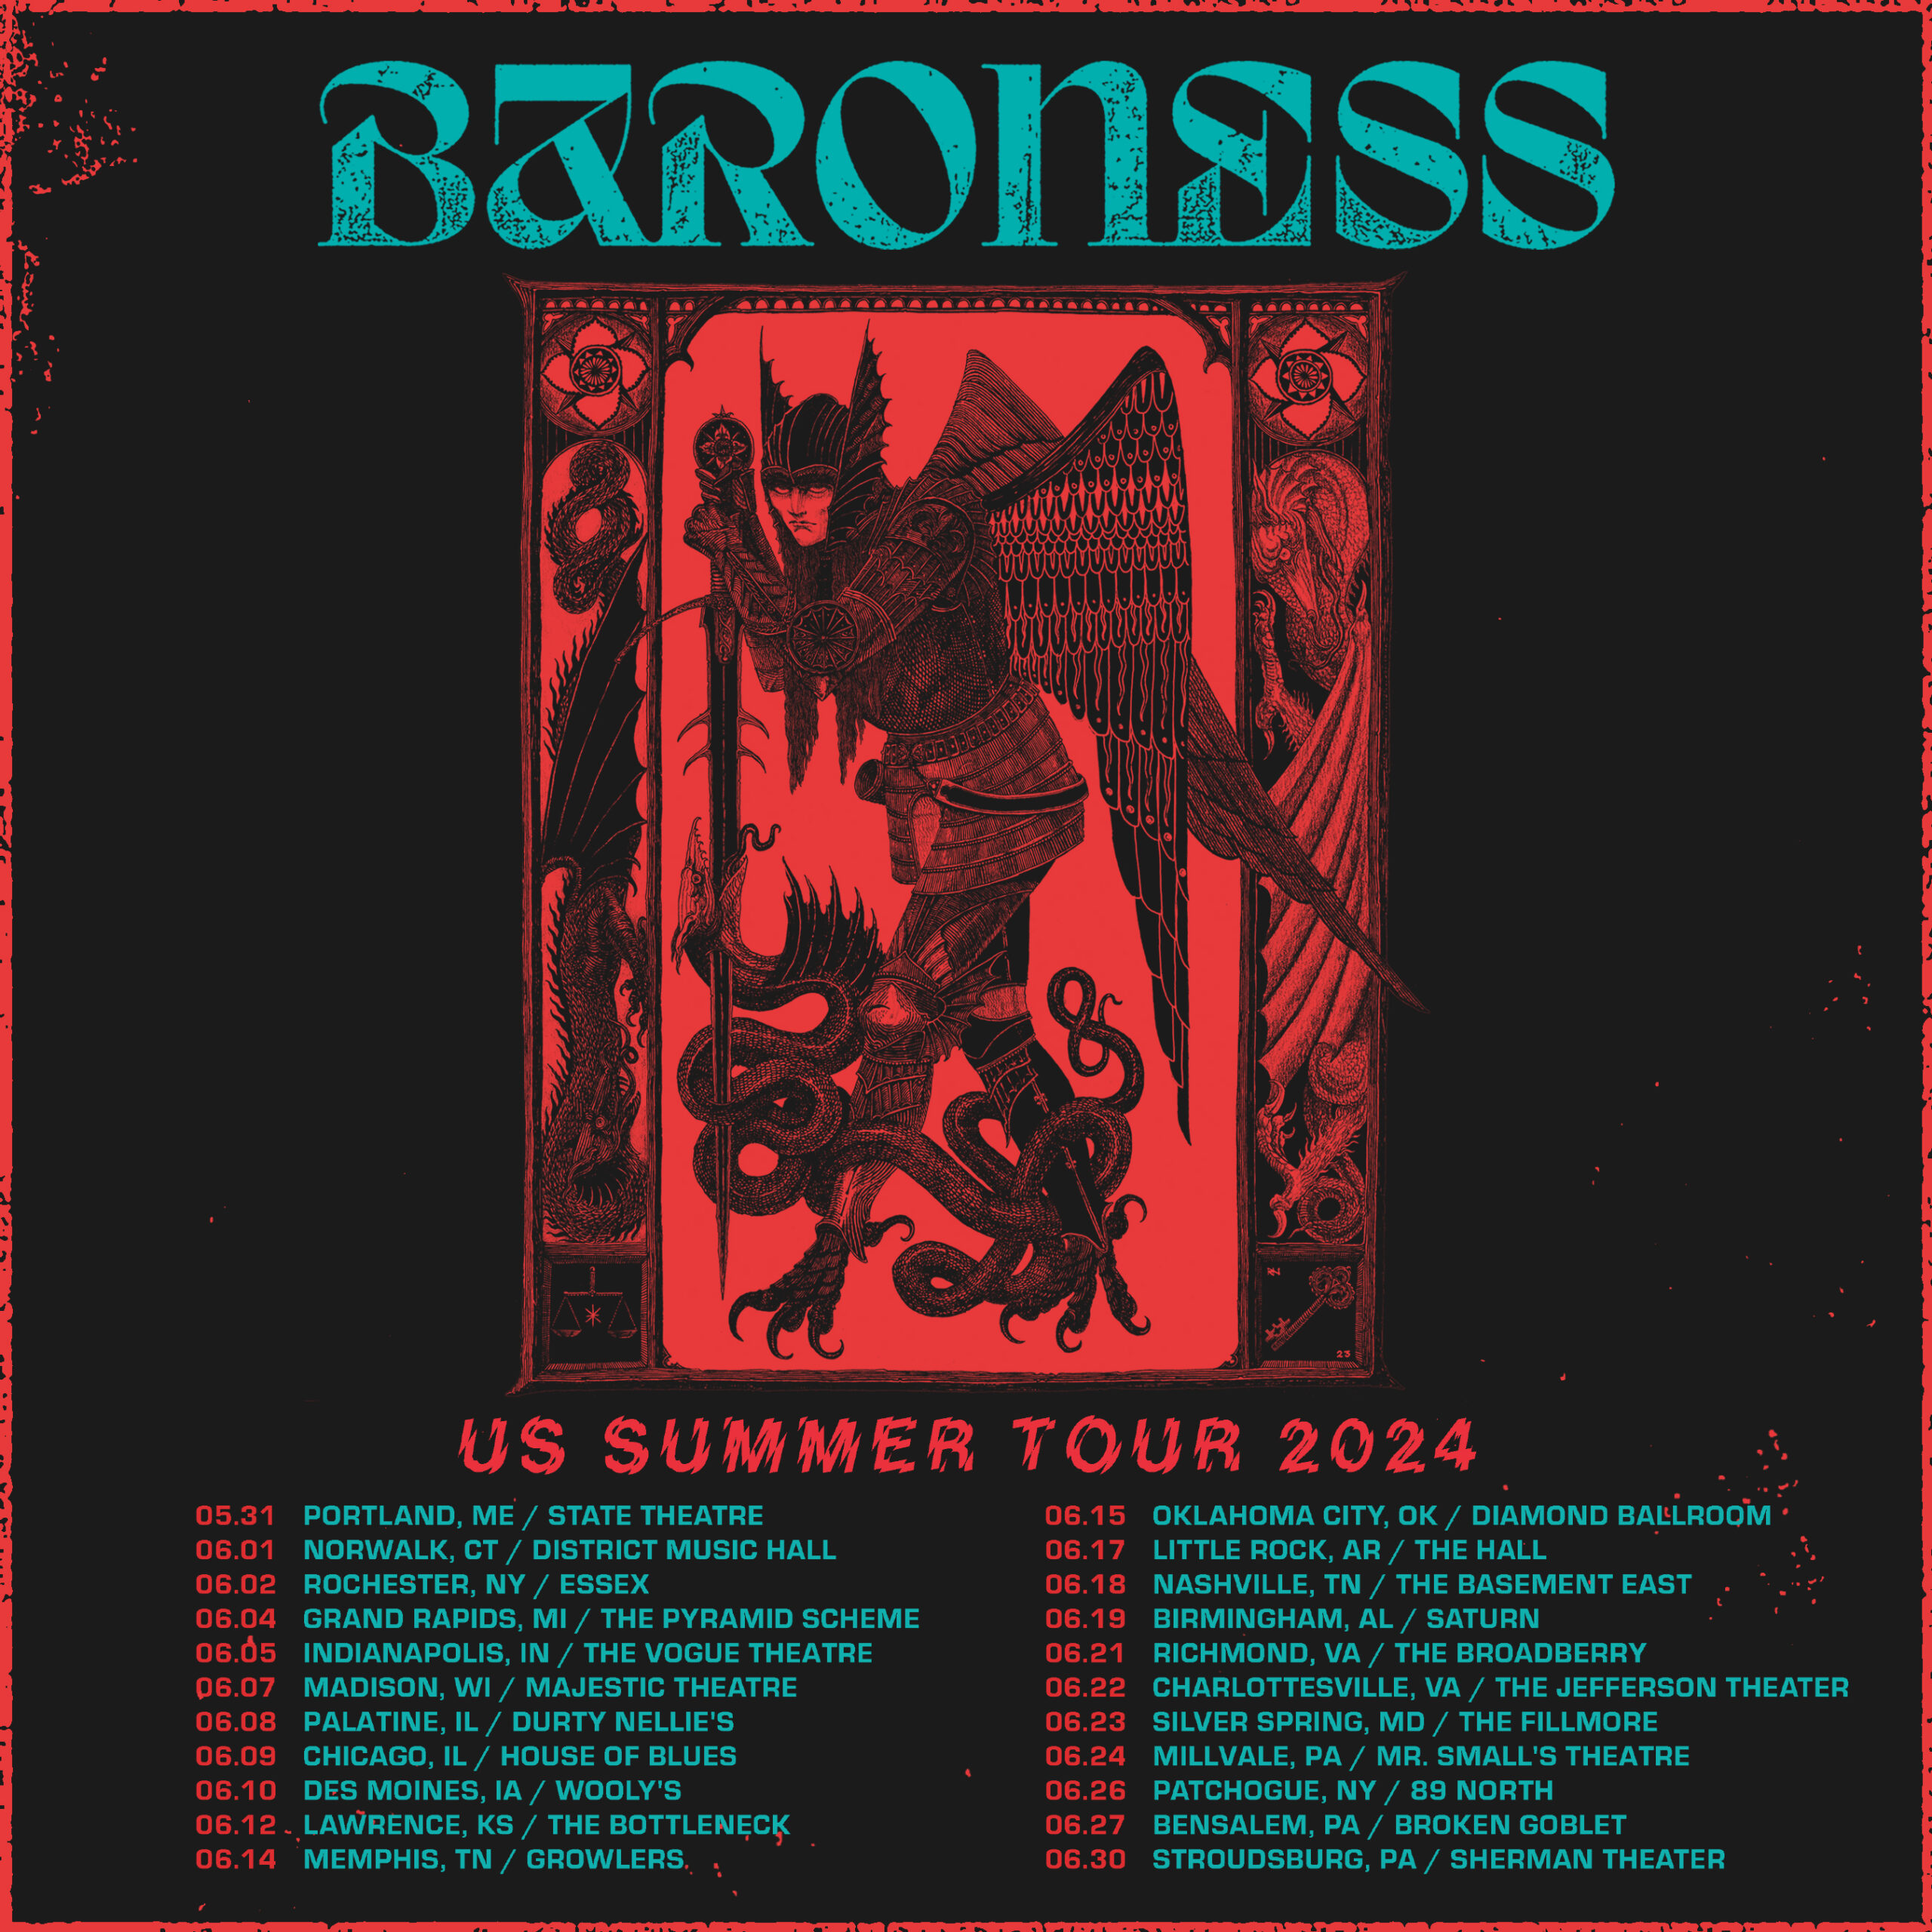 US SUMMER TOUR ANNOUNCED